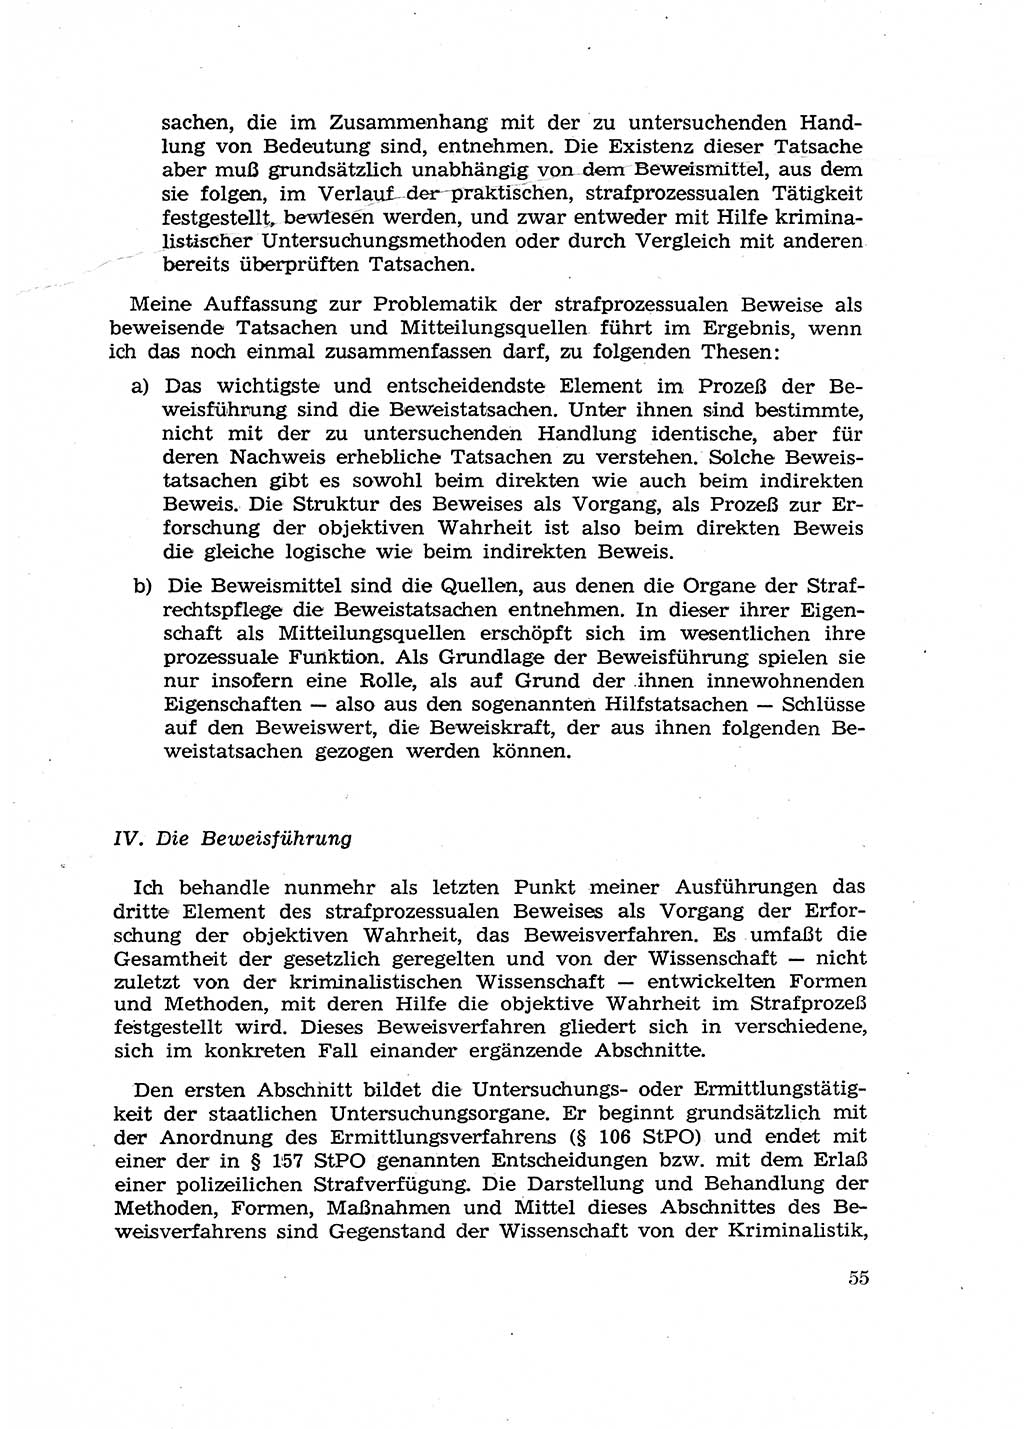 Fragen des Beweisrechts im Strafprozess [Deutsche Demokratische Republik (DDR)] 1956, Seite 55 (Fr. BeweisR. Str.-Proz. DDR 1956, S. 55)